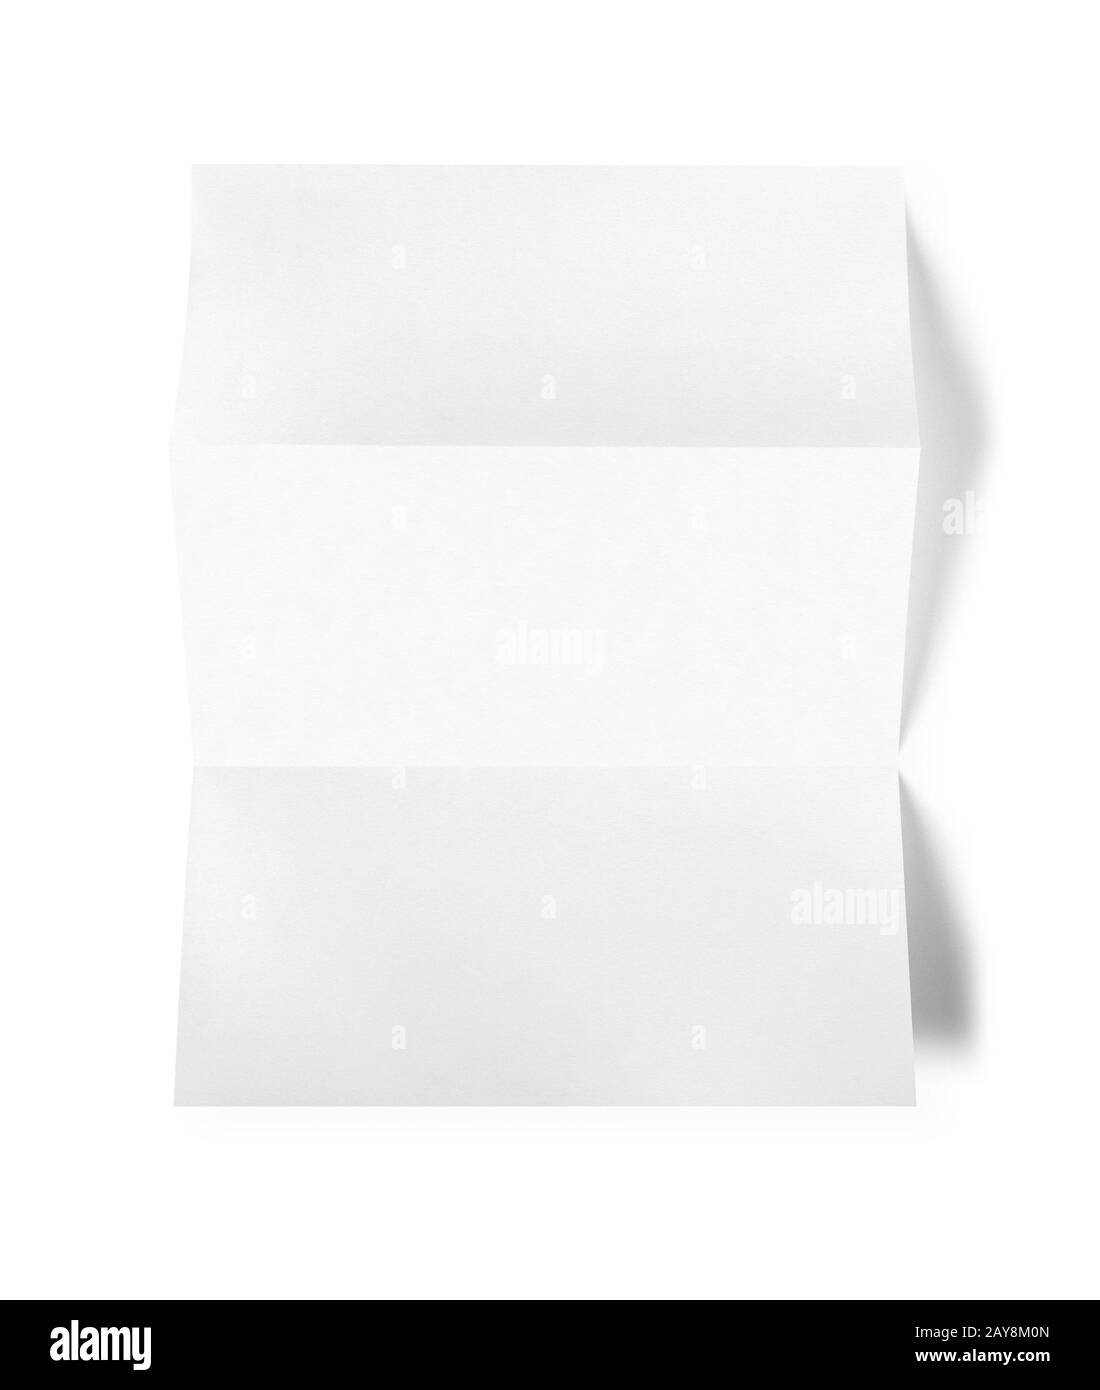 Leere gefalteten weißen A4-Blatt mockup Vorlage Stockfoto